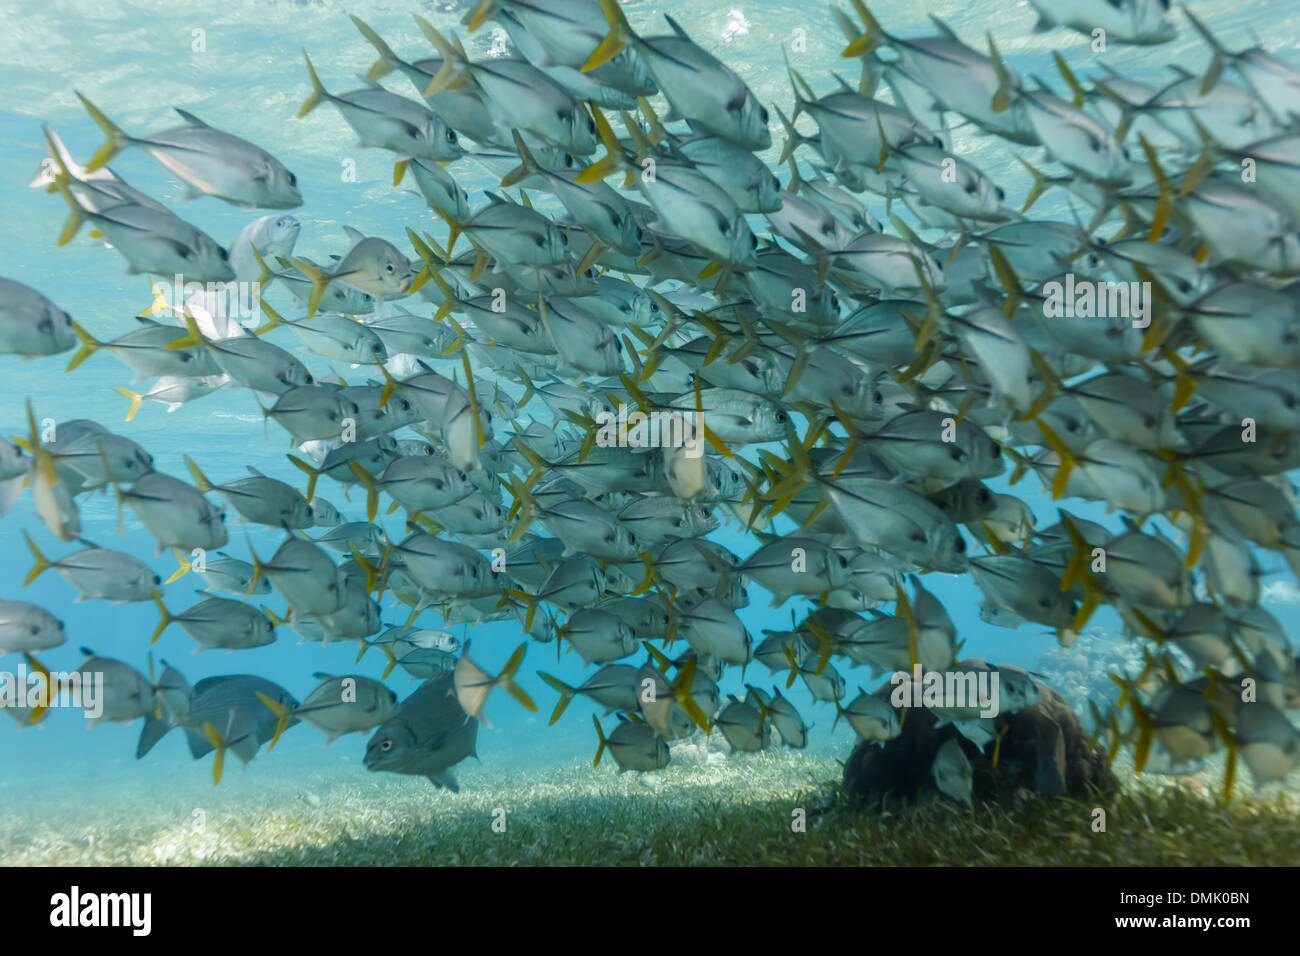 Escuela de ojo de caballo gato peces nadan sobre arrecifes de coral en la Reserva Marina Hol Chan Foto de stock